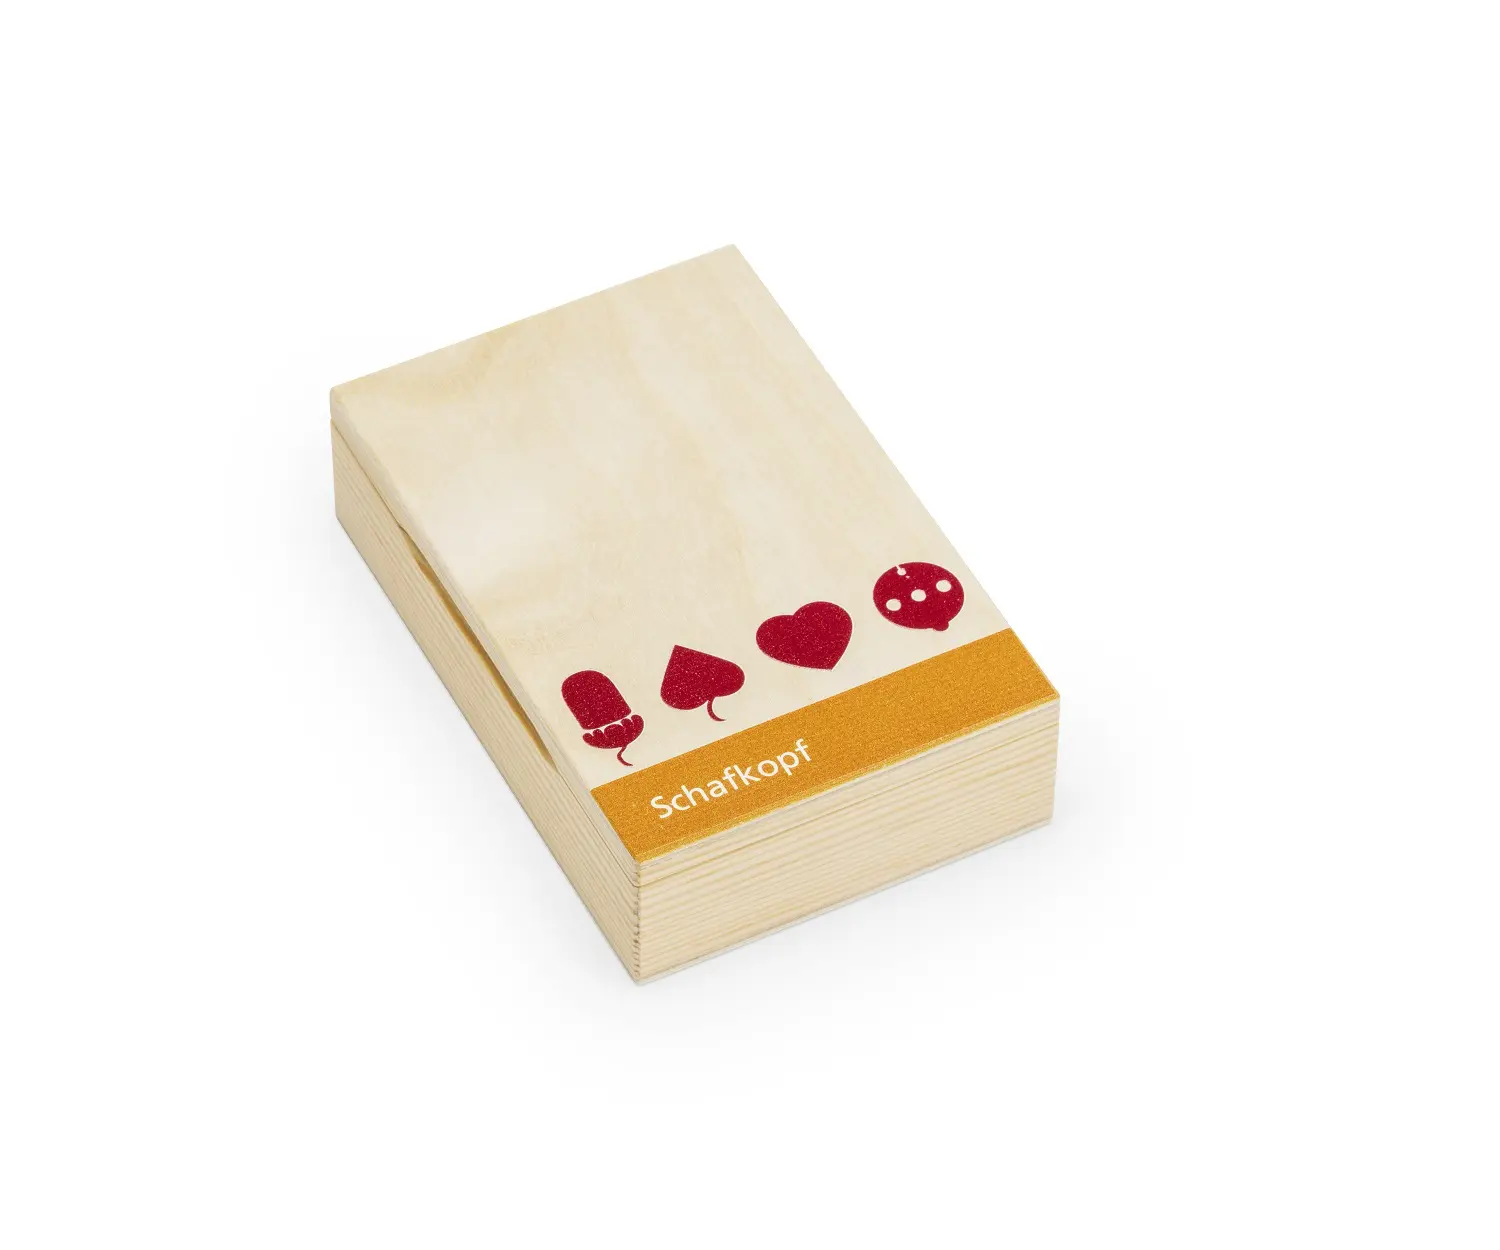 Kartenbox aus Holz mit der Schrift Schafkopf und Spielsymbolen